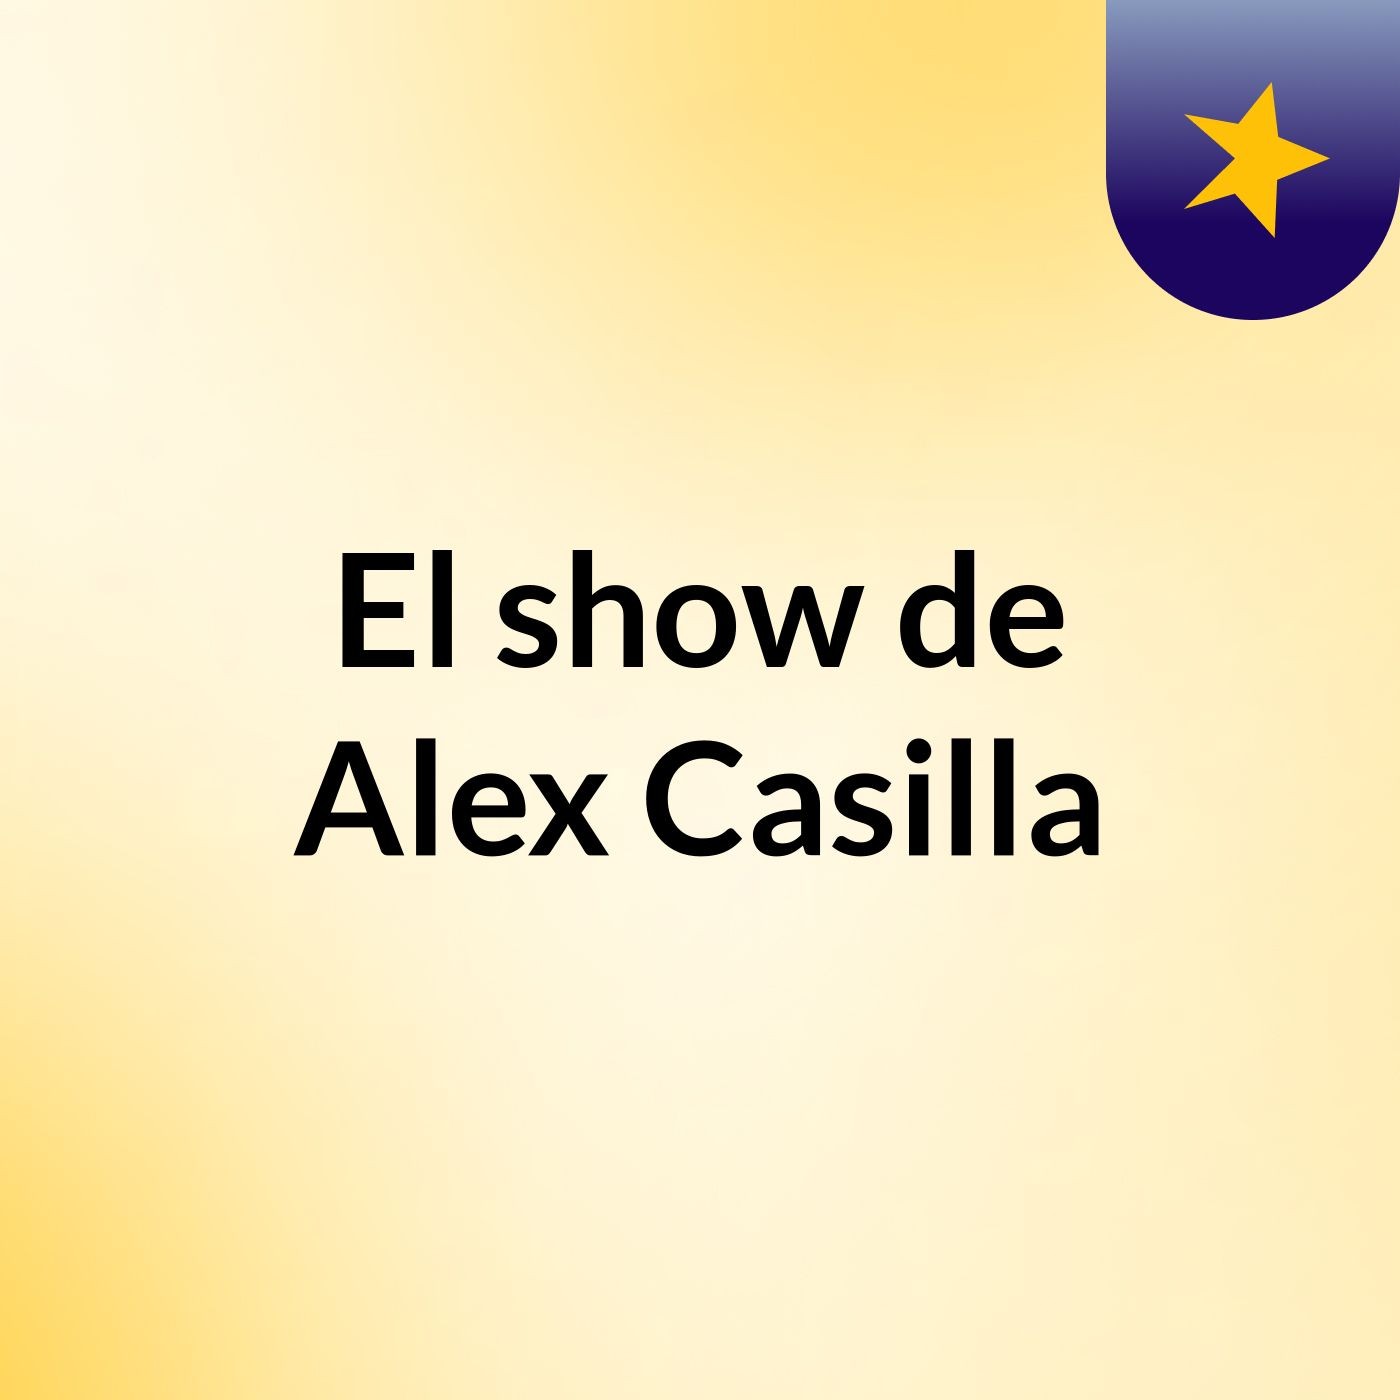 El show de Alex Casilla